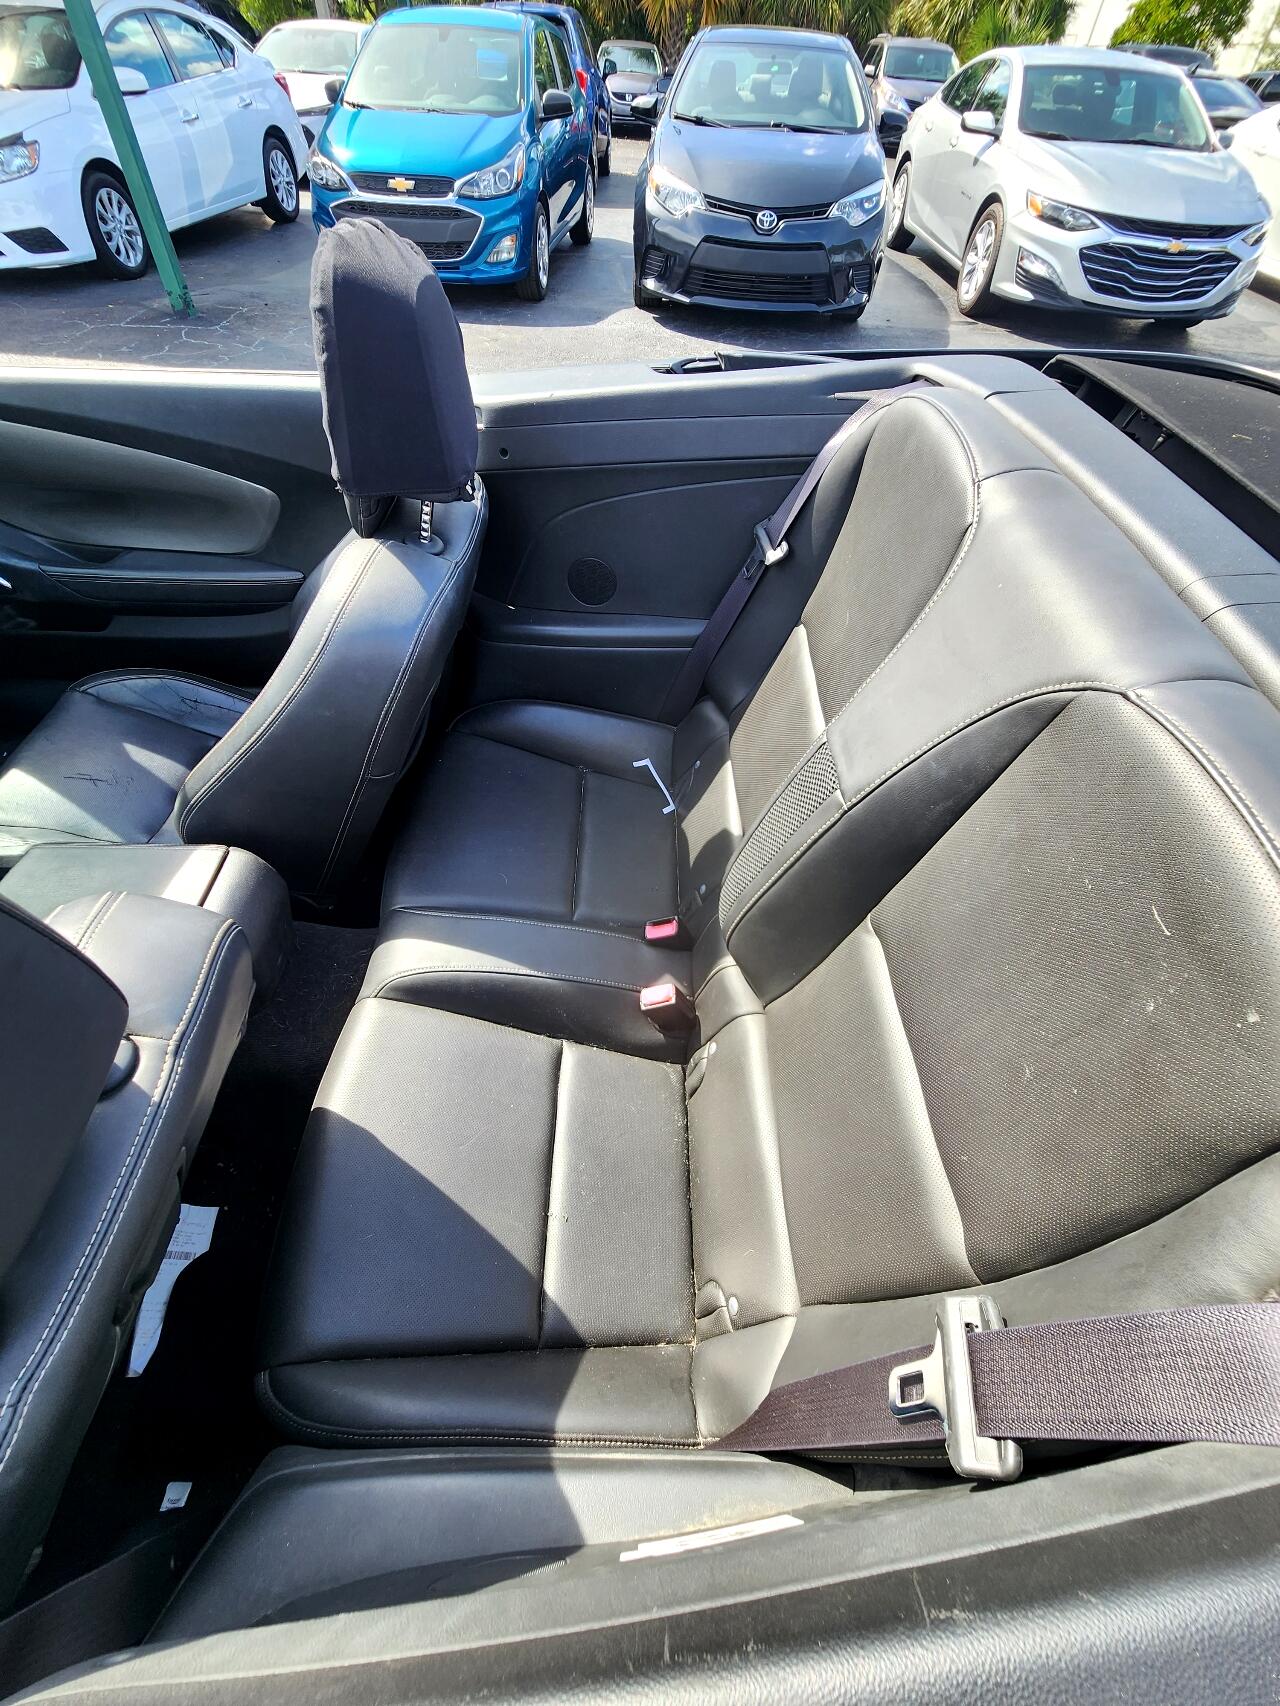 2014 CHEVROLET Camaro Convertible - $19,495